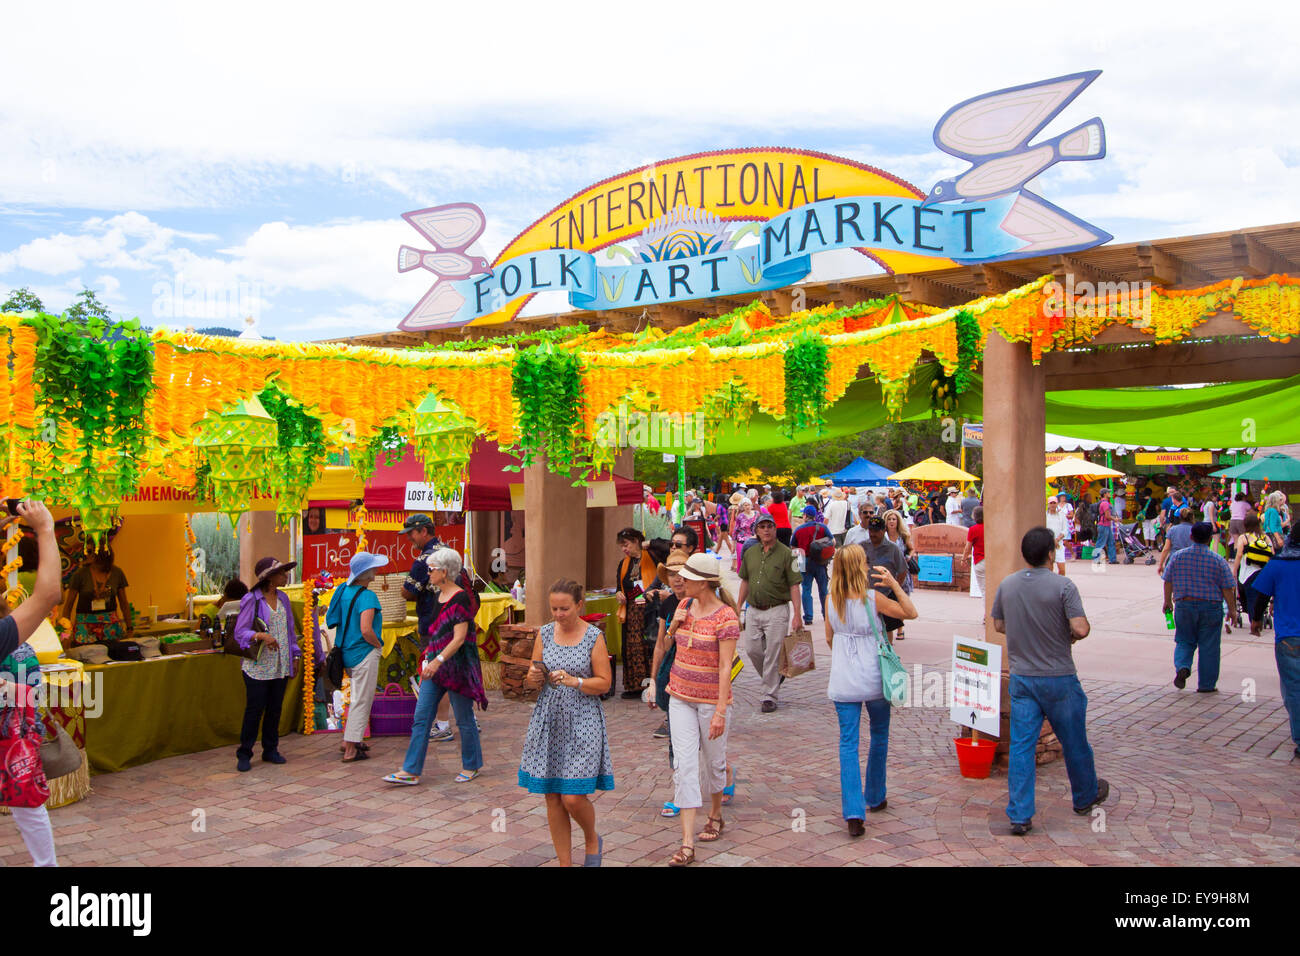 International Folk Art Market held annually in Santa Fe, New Mexico, USA  July 11, 2015 Stock Photo